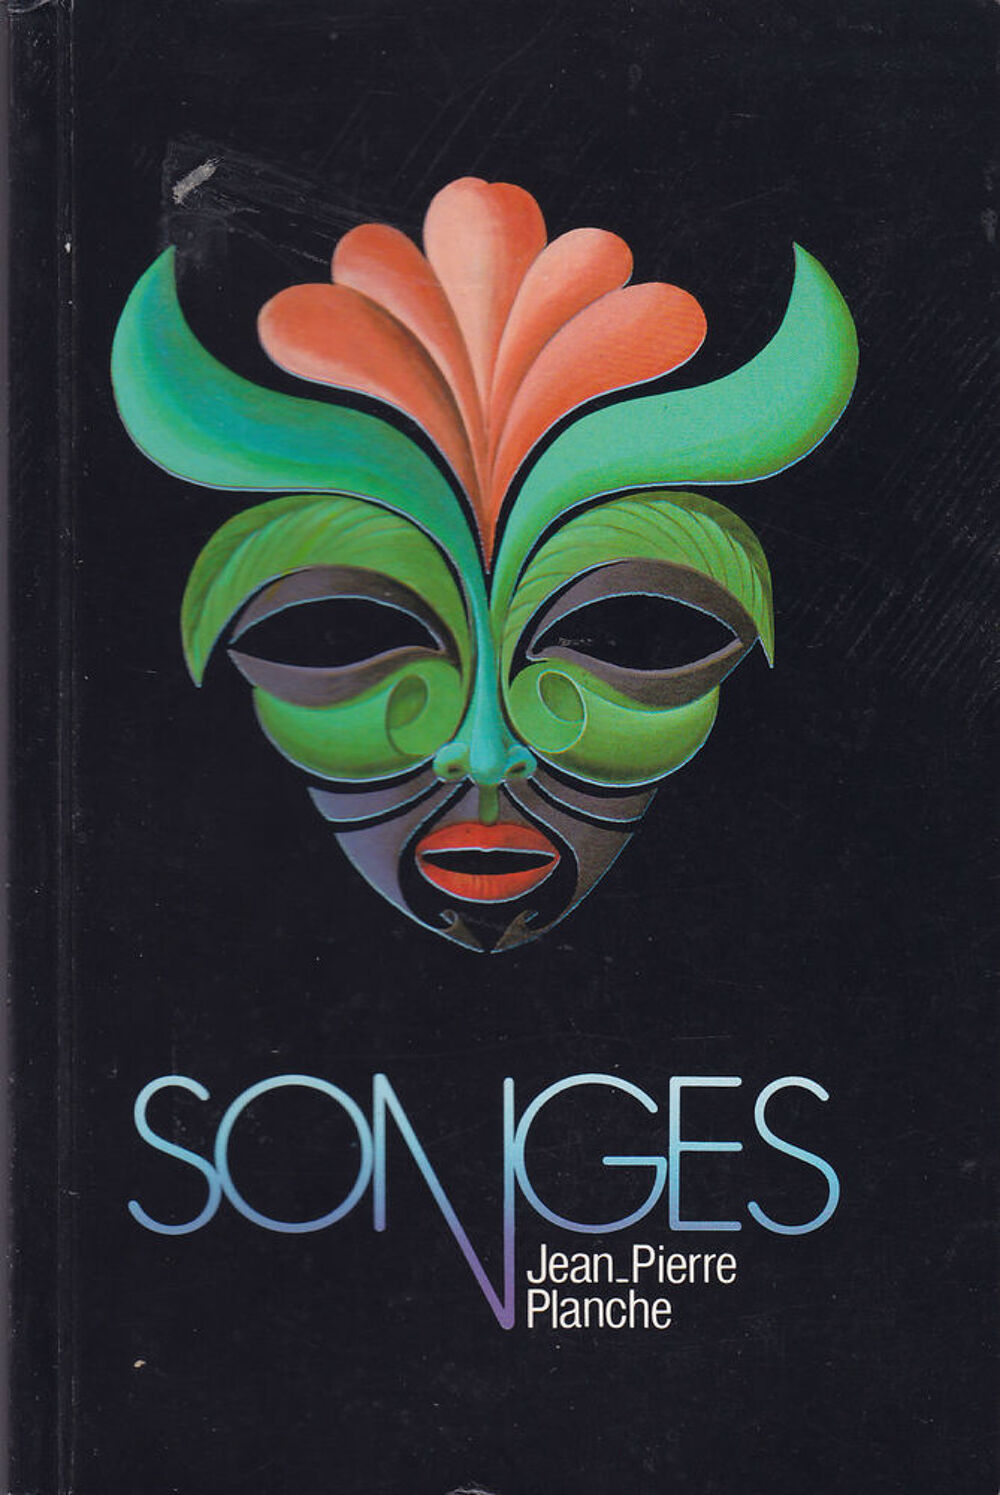 591 SONGES de Jean-Pierre PLANCHE livre rare Livres et BD